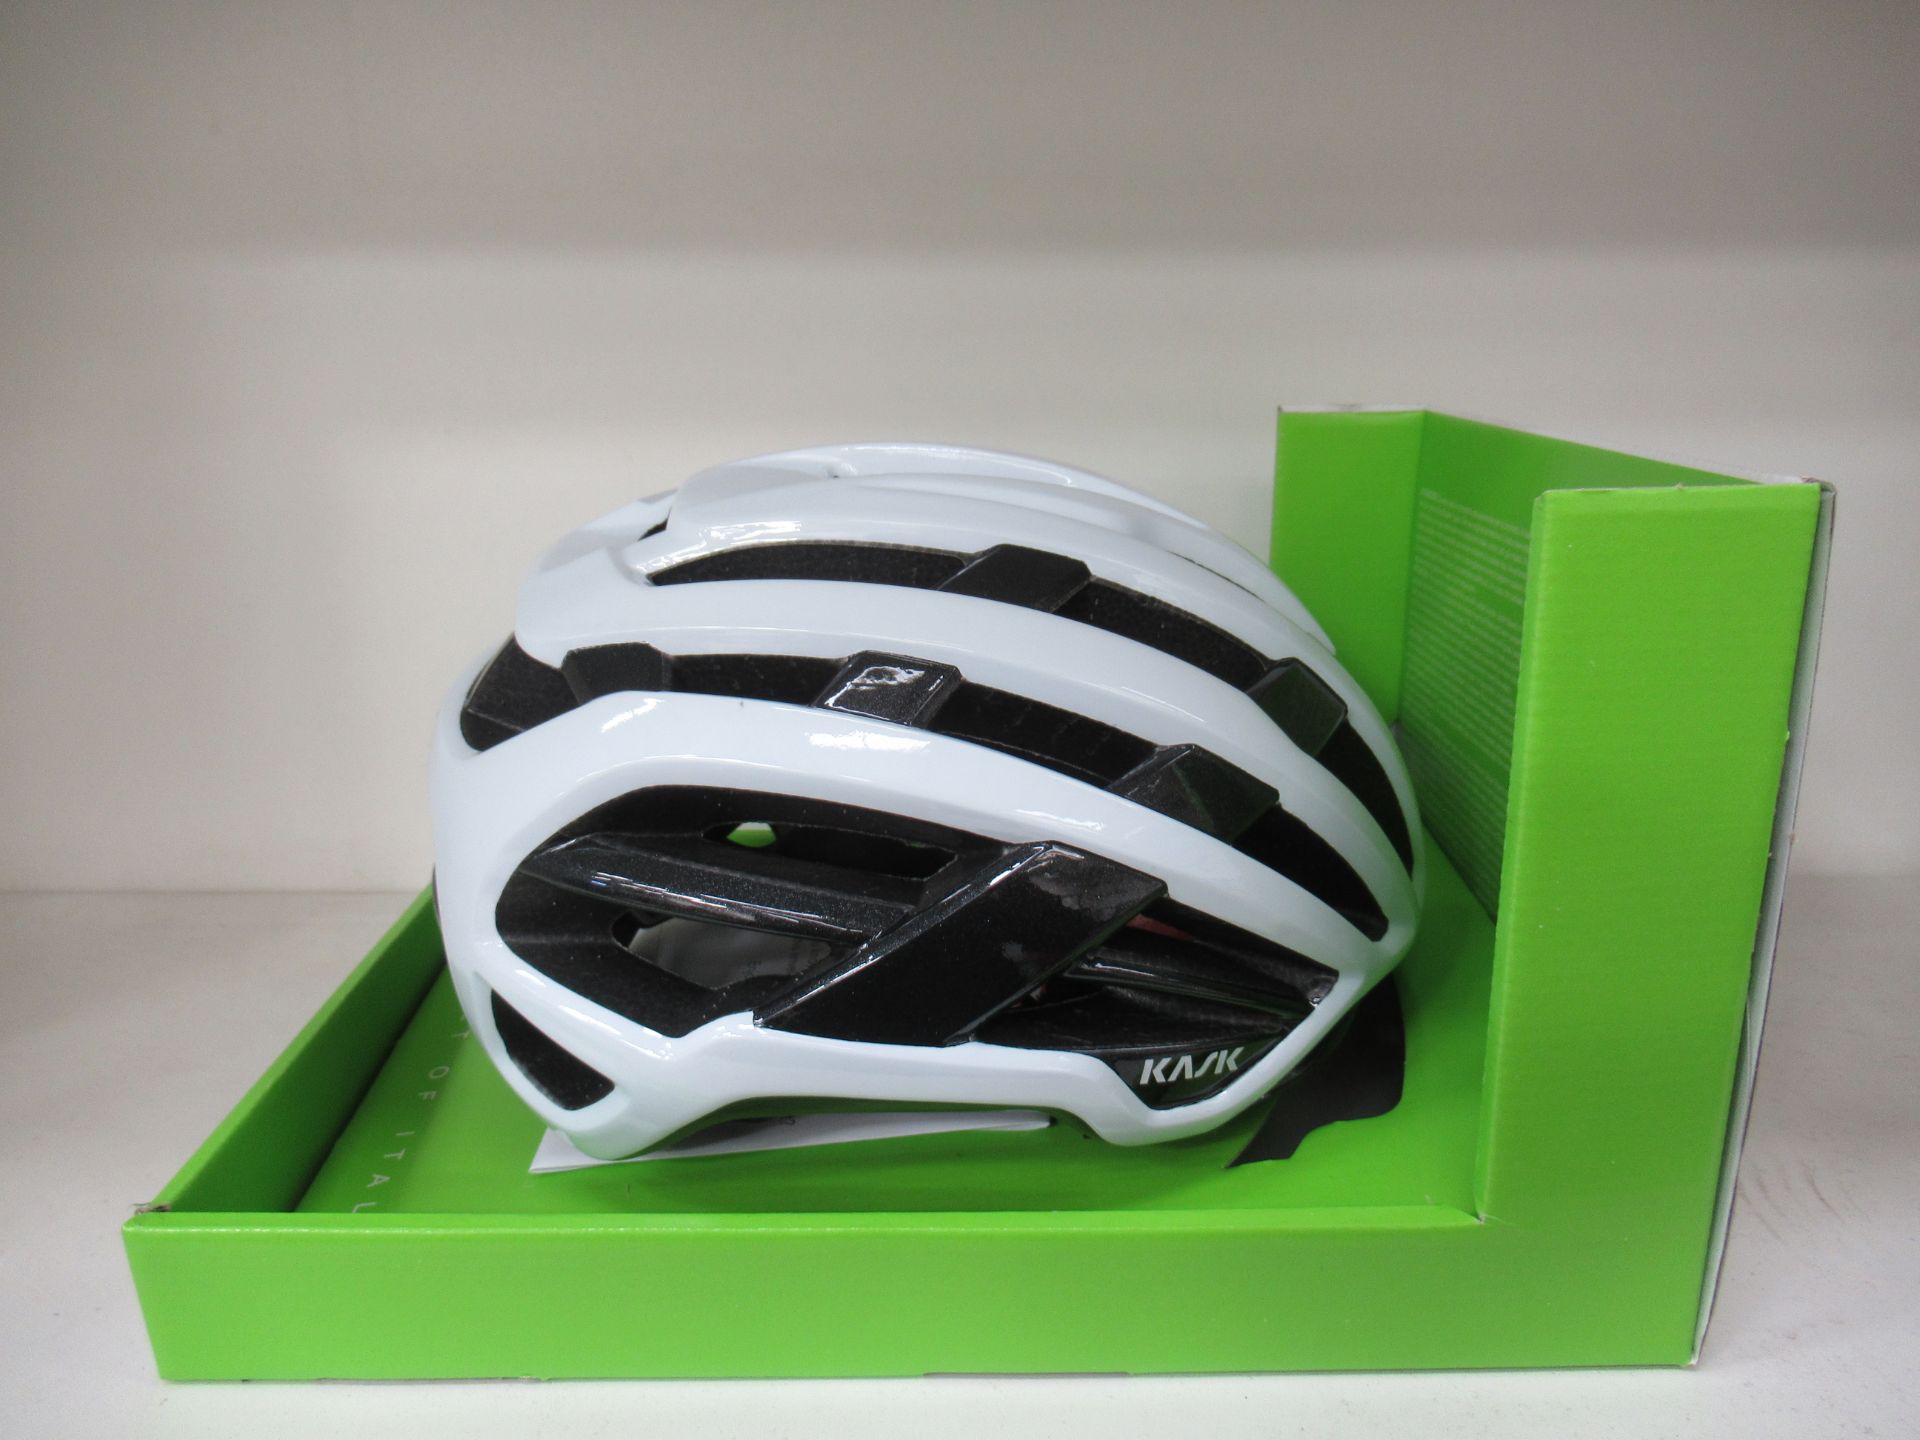 KASK Valegro white medium sized helmet - boxed (RRP£185)